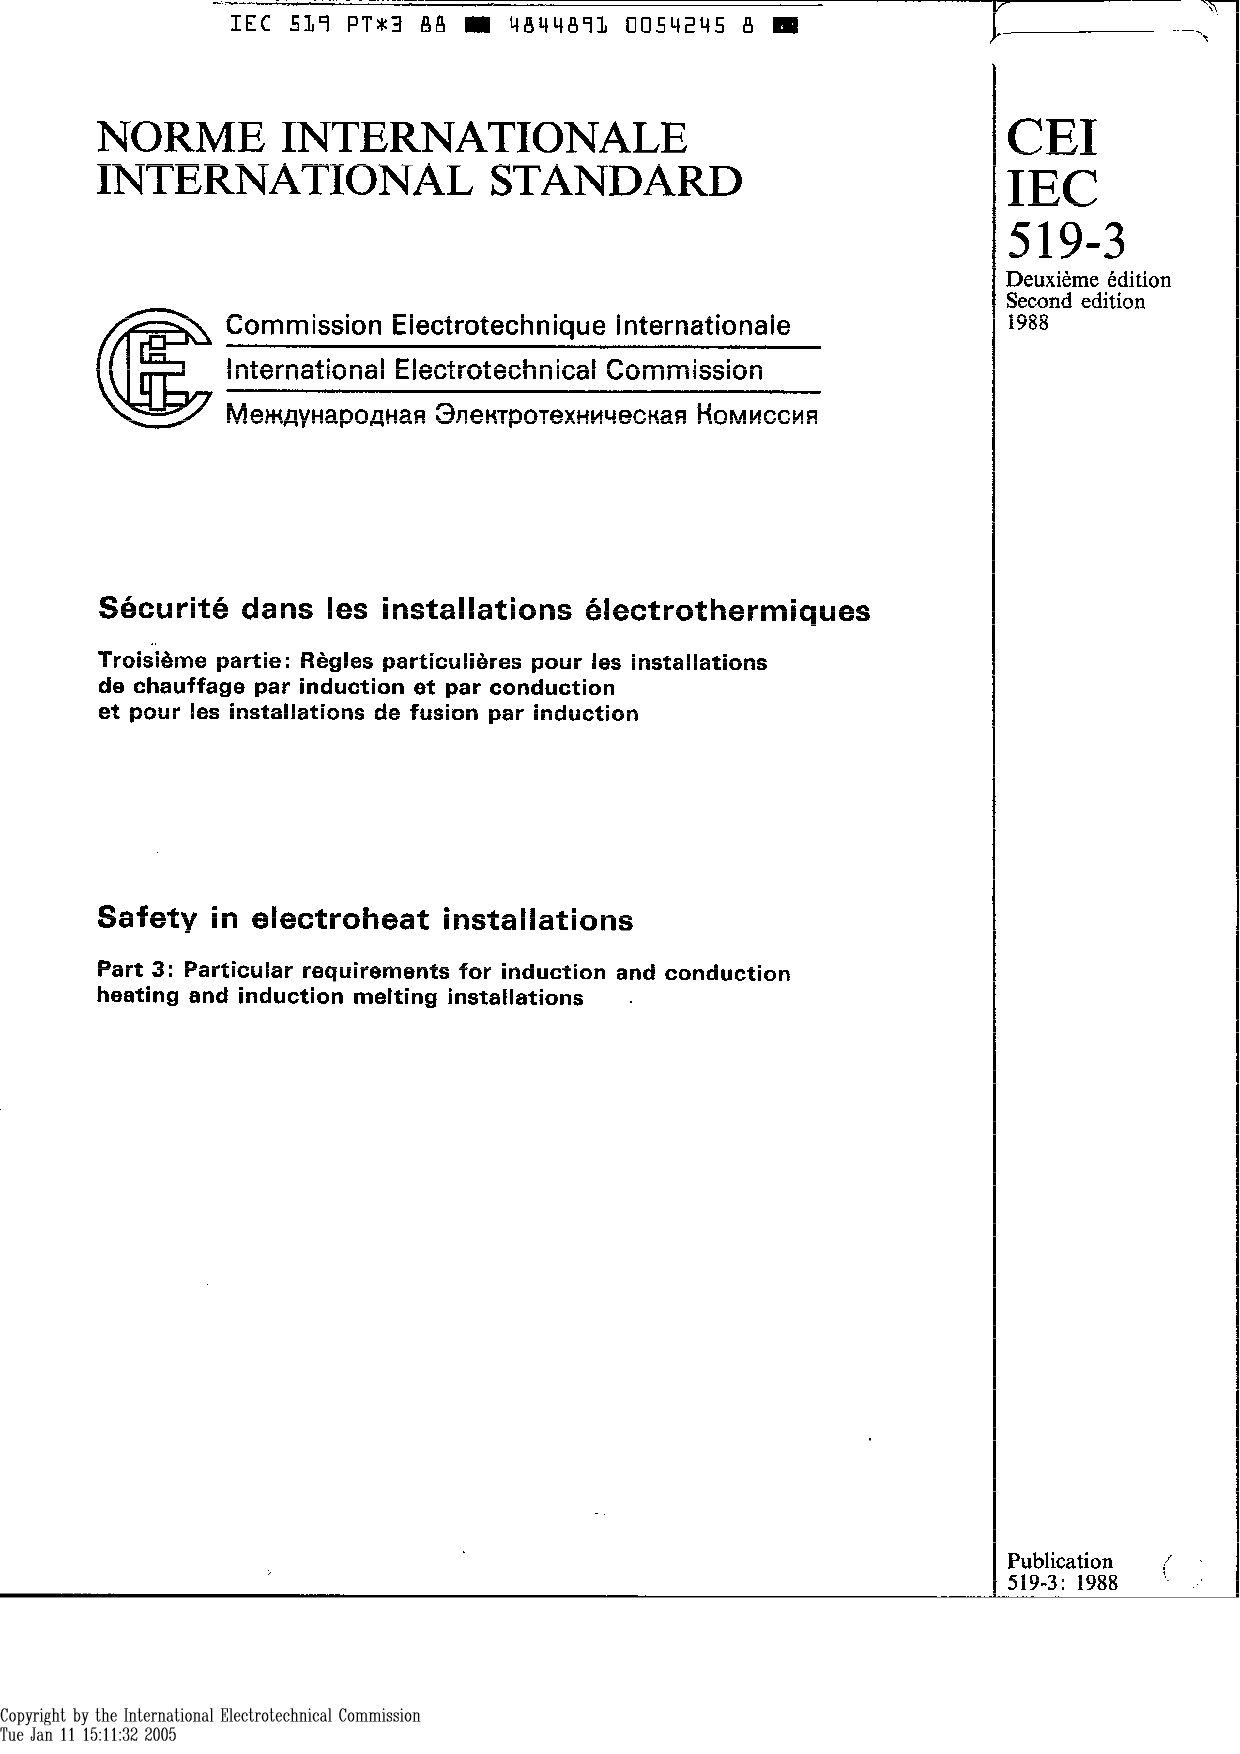 IEC 60519-3:1988